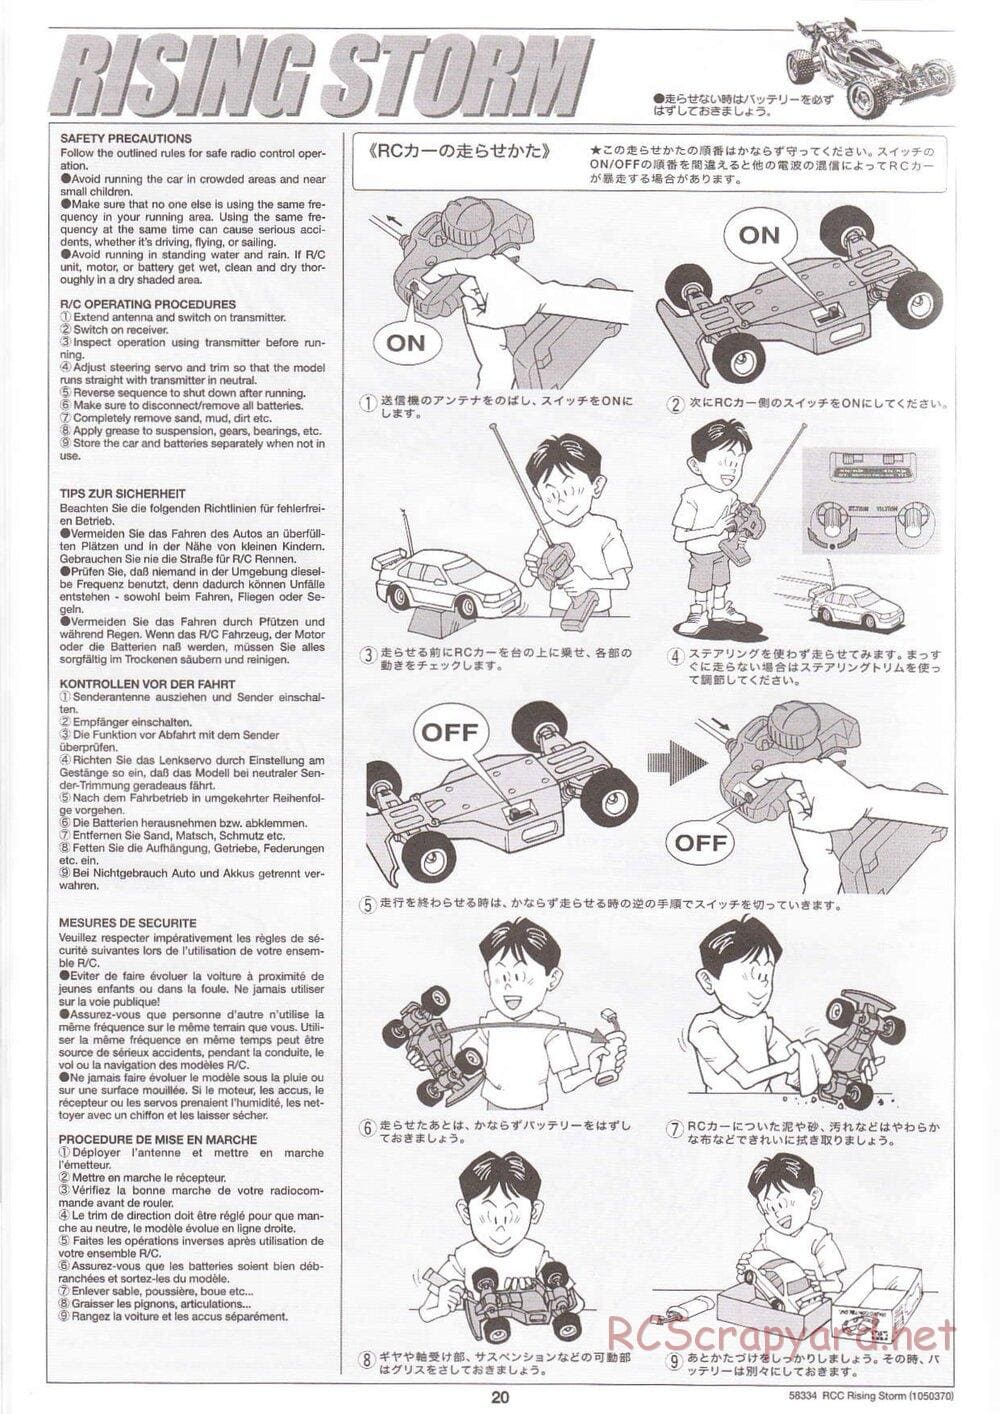 Tamiya - Rising Storm Chassis - Manual - Page 20